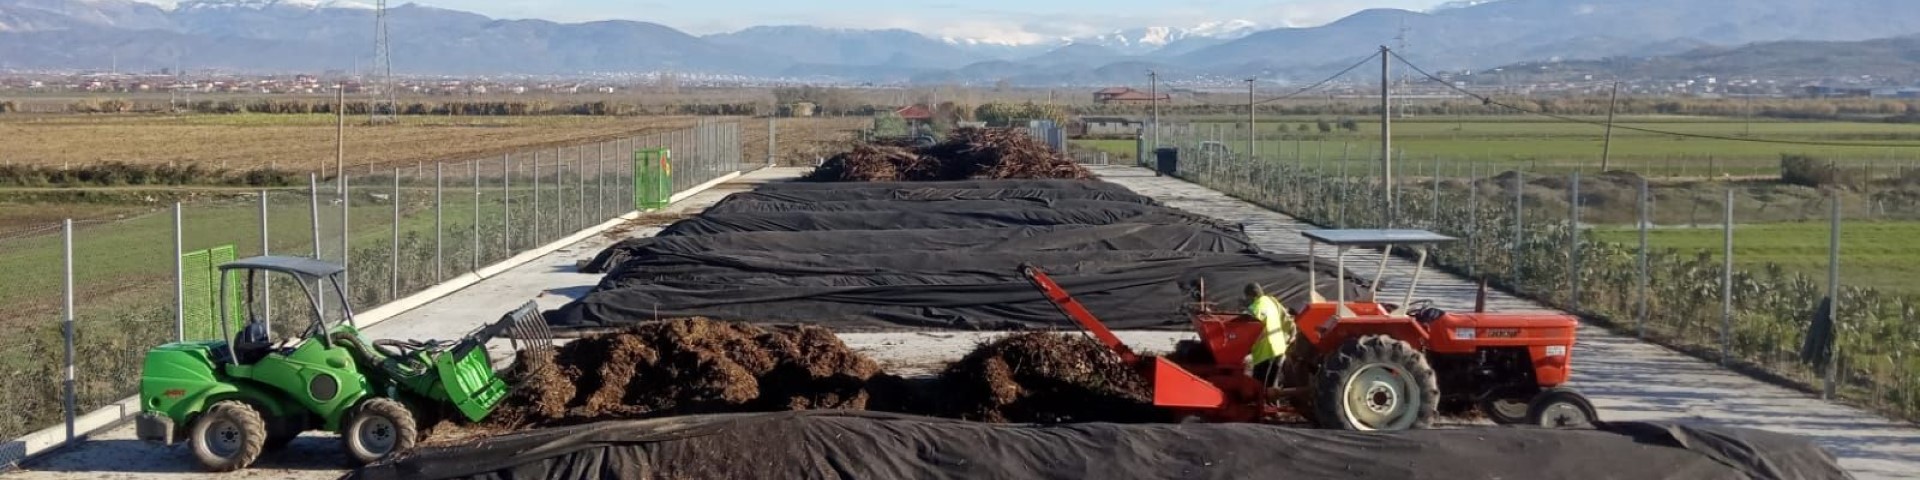 Ein Blick auf die Kompostieranlage der Gemeinde Cerrik, die Grünabfälle verarbeitet.